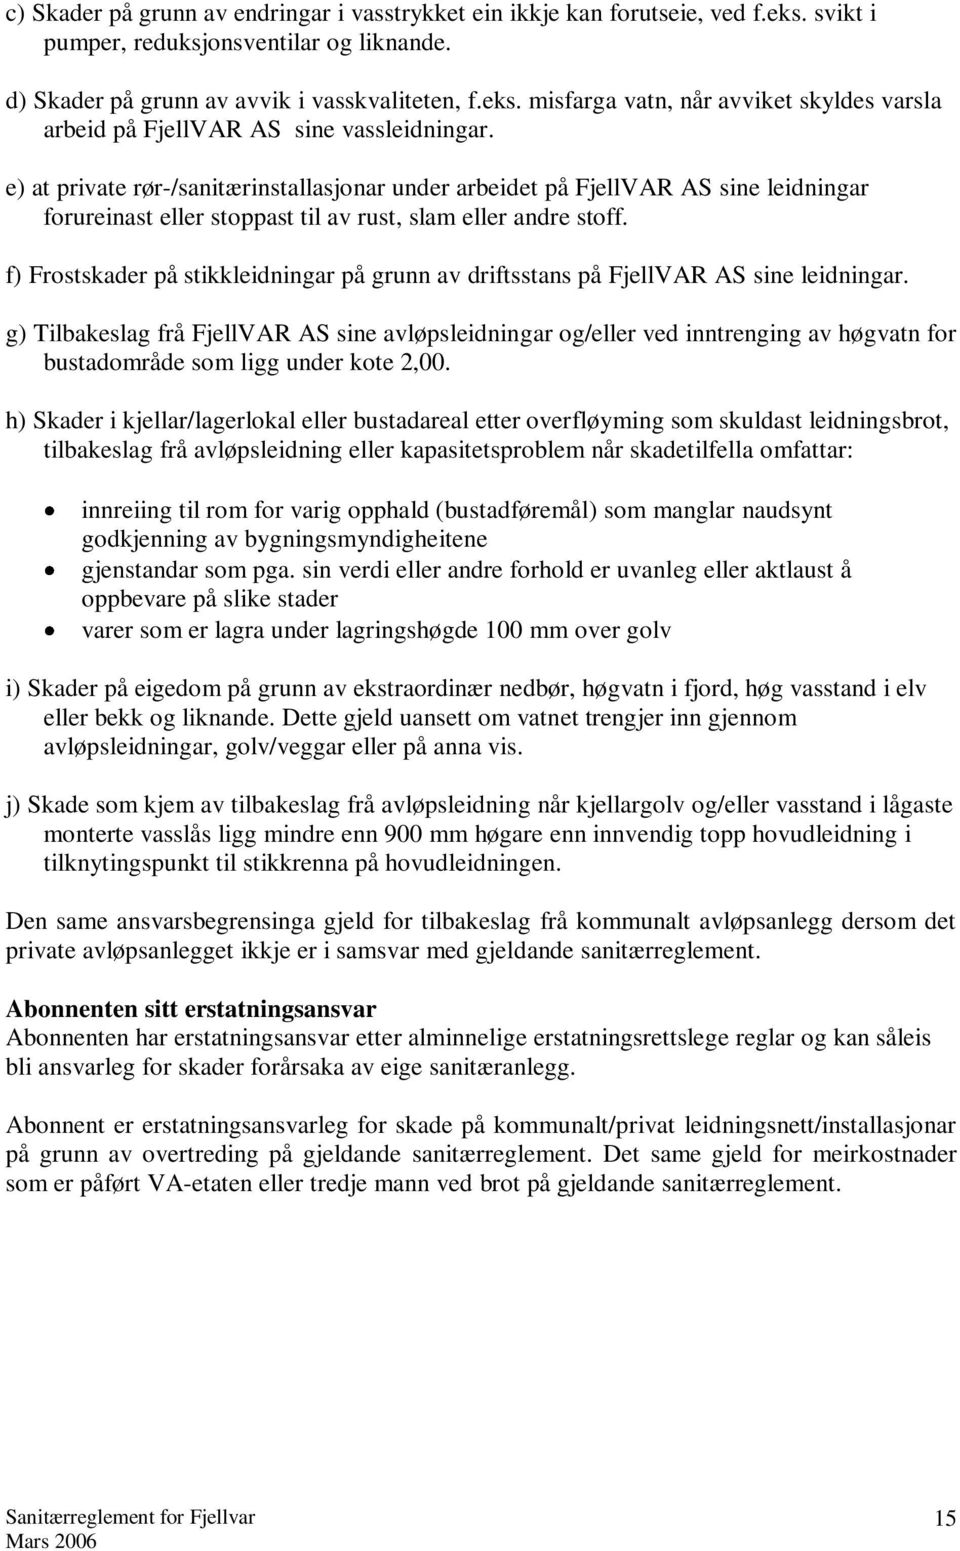 f) Frostskader på stikkleidningar på grunn av driftsstans på FjellVAR AS sine leidningar.